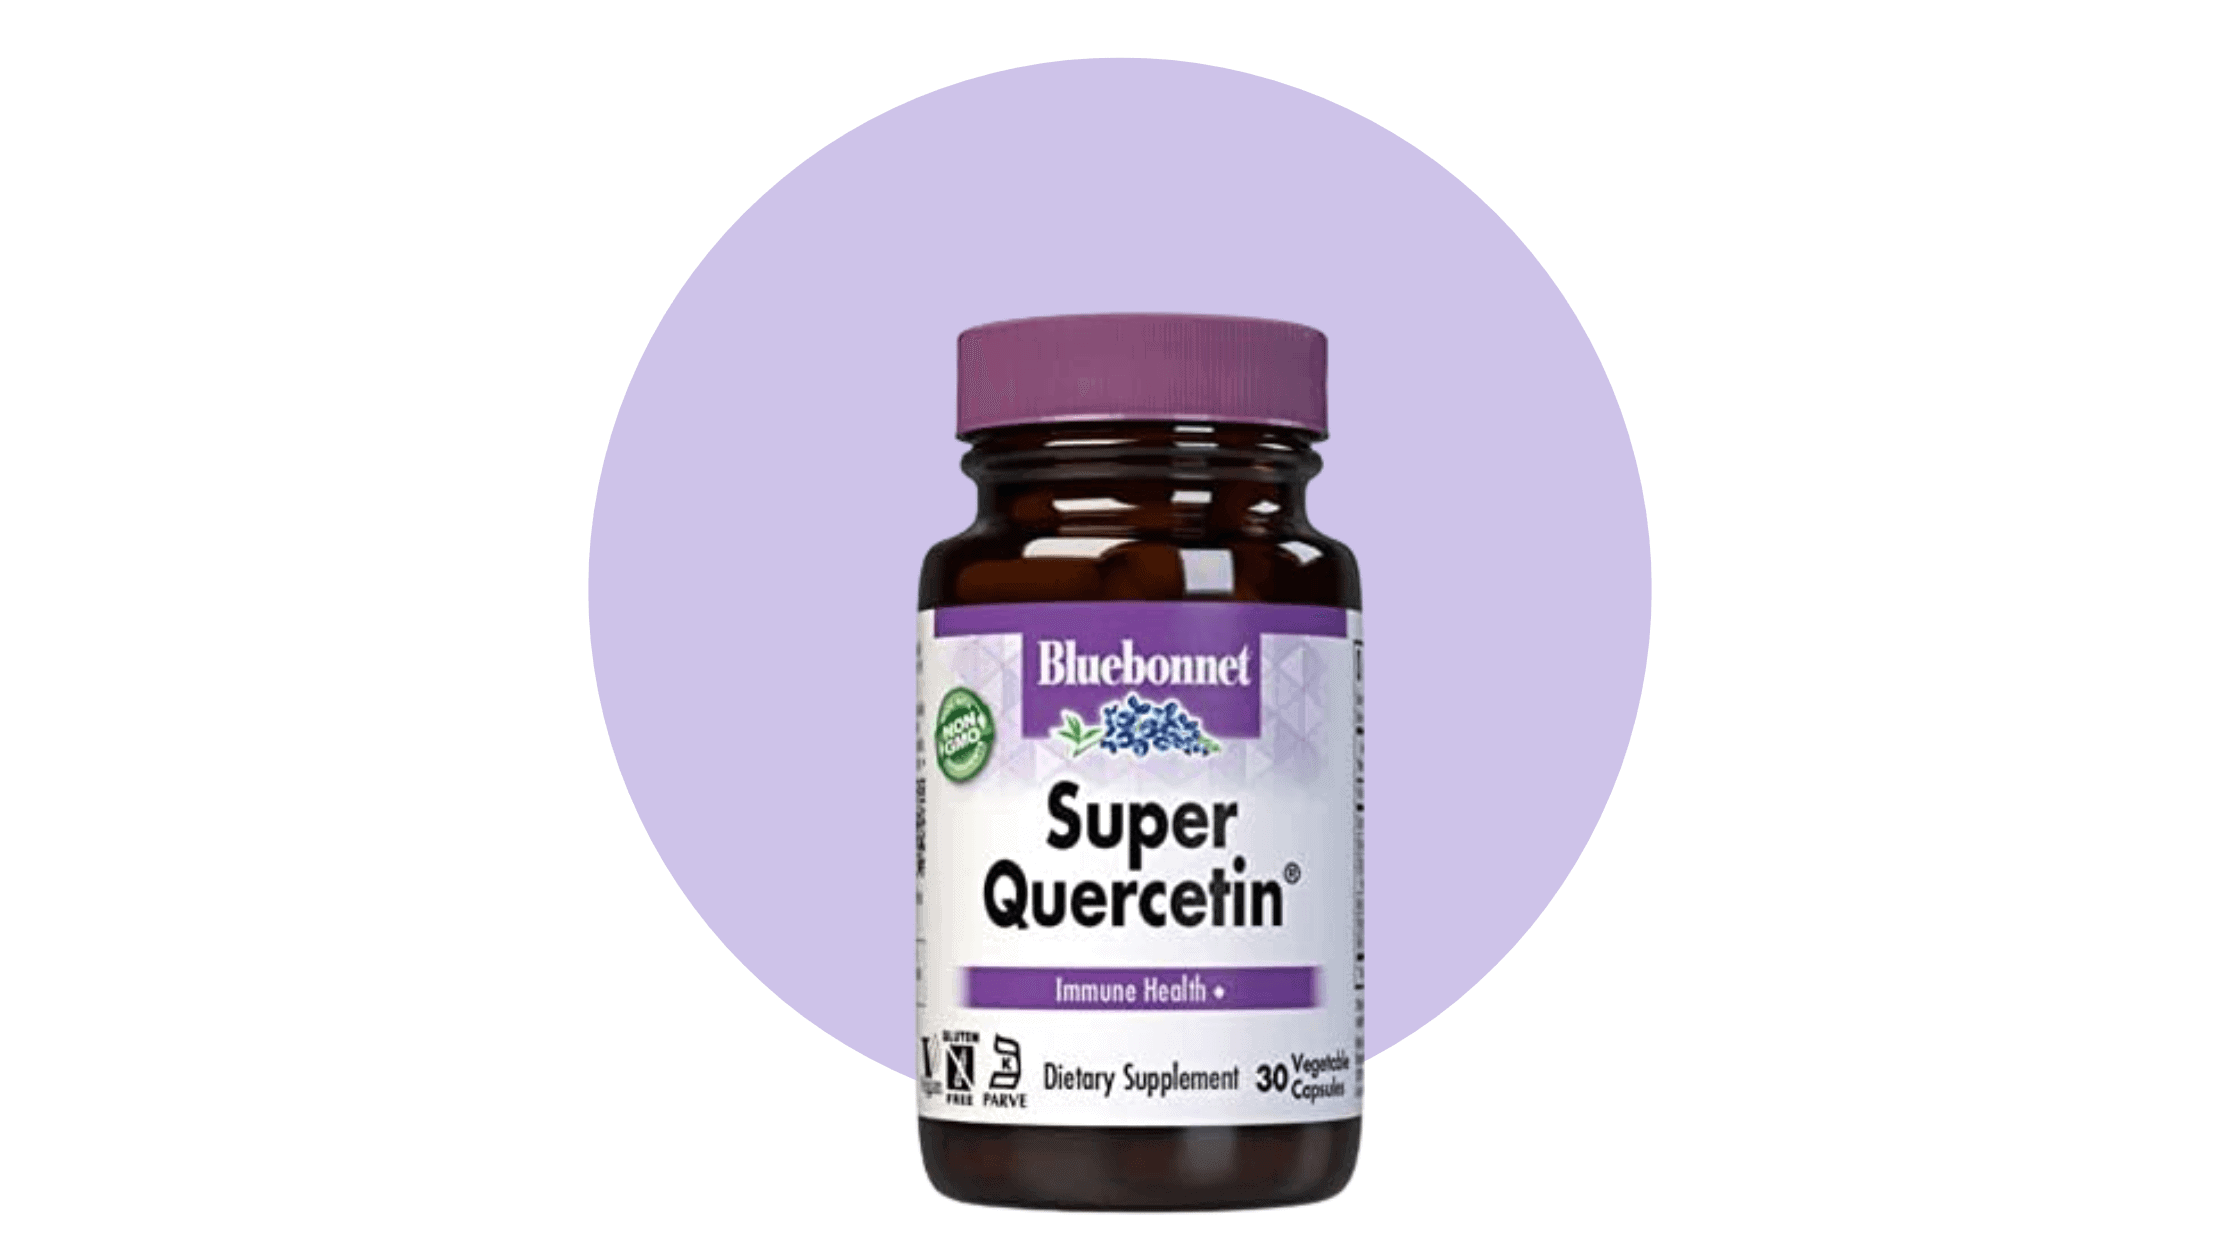 Bluebonnet Quercetin supplement